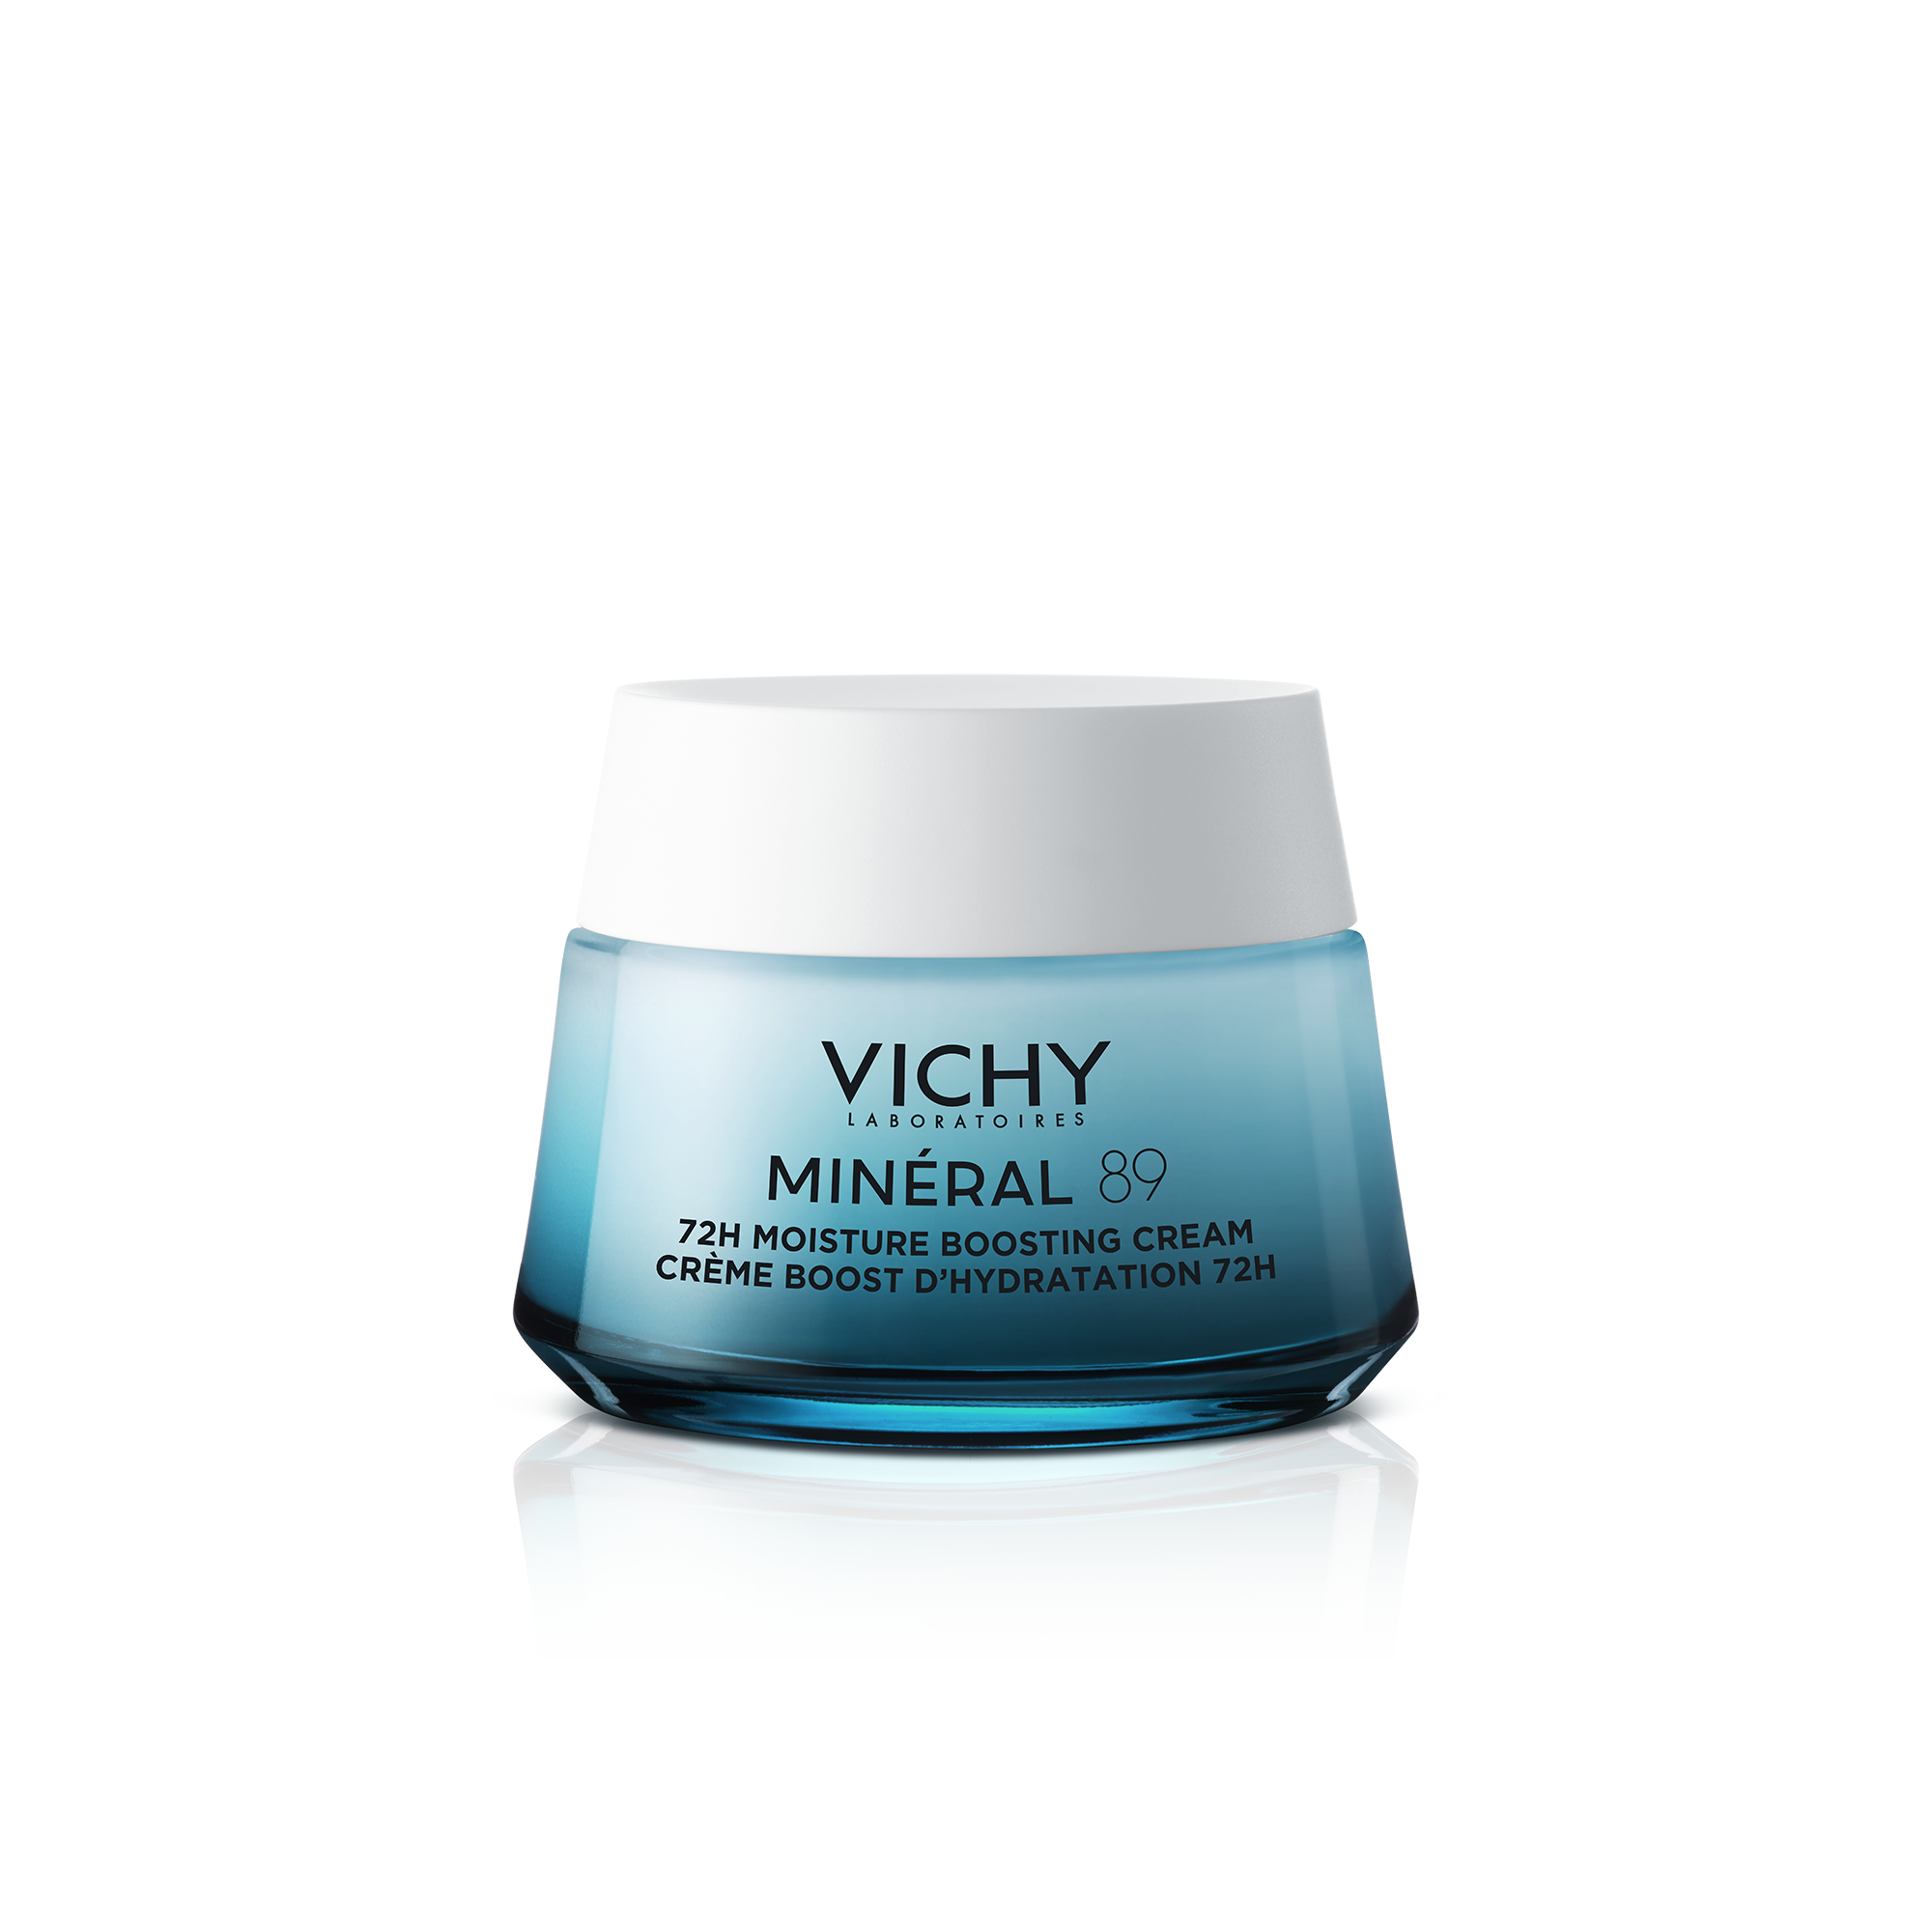 цена Насыщенный увлажняющий и питательный крем для лица Vichy Mineral 89, 50 мл